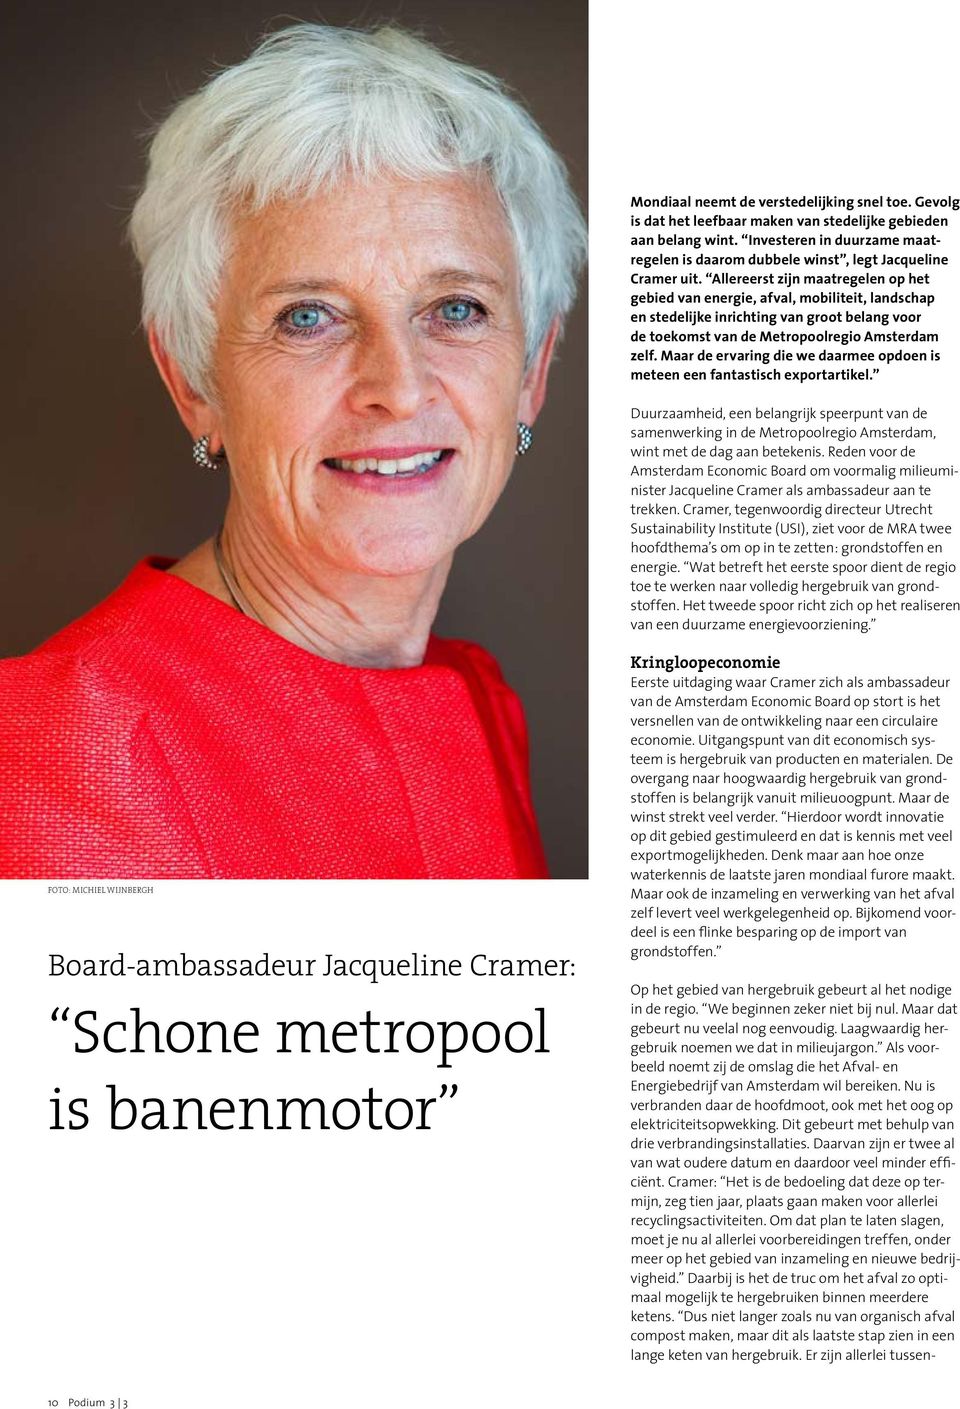 Allereerst zijn maatregelen op het gebied van energie, afval, mobiliteit, landschap en stedelijke inrichting van groot belang voor de toekomst van de Metropoolregio Amsterdam zelf.